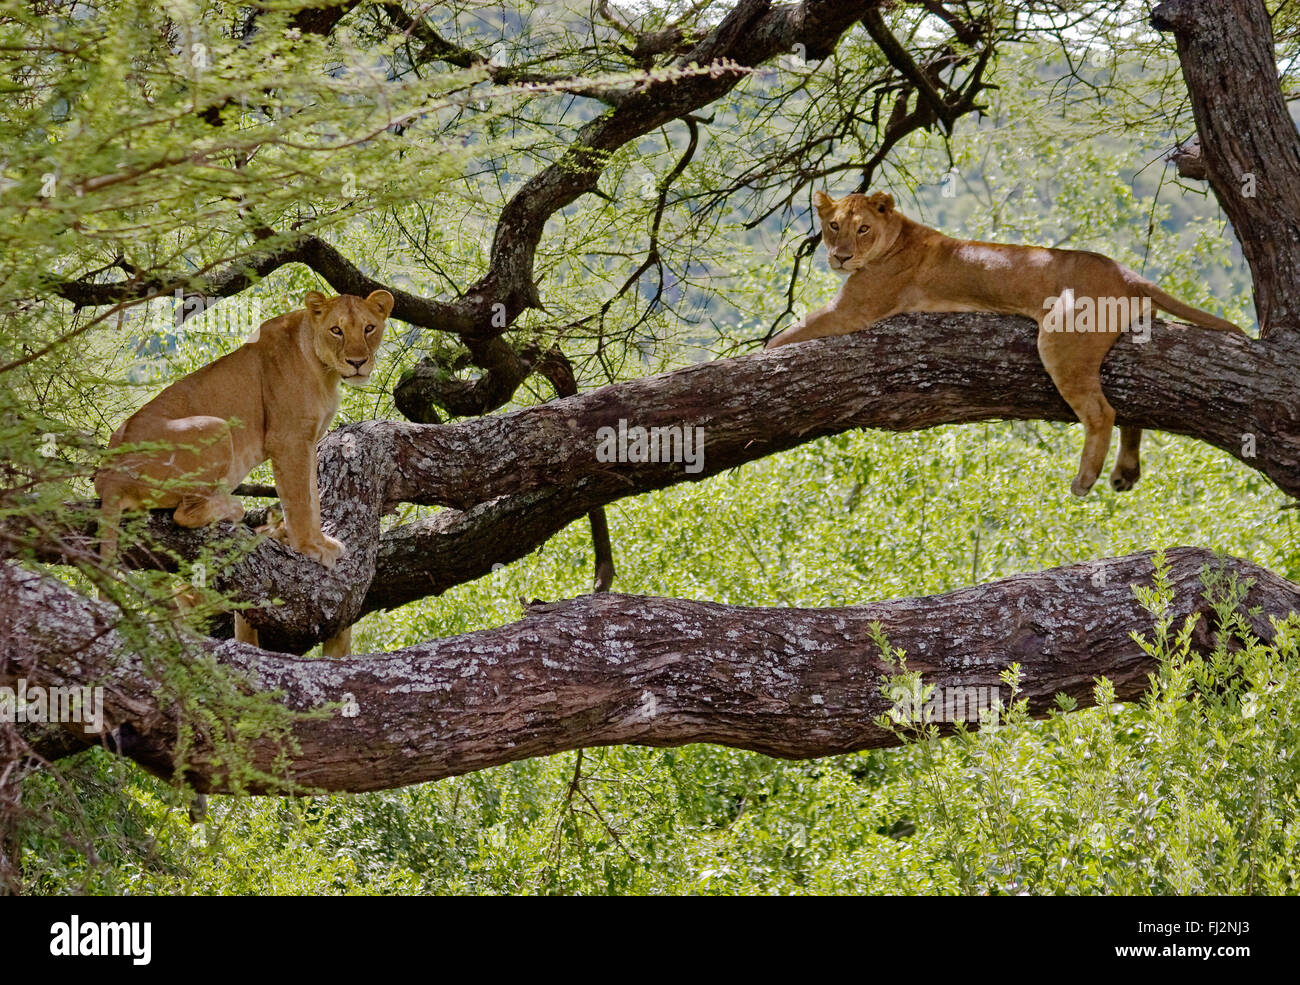 Les lions (Panthera leo) dans un arbre - PARC NATIONAL DU LAC MANYARA, Tanzanie Banque D'Images